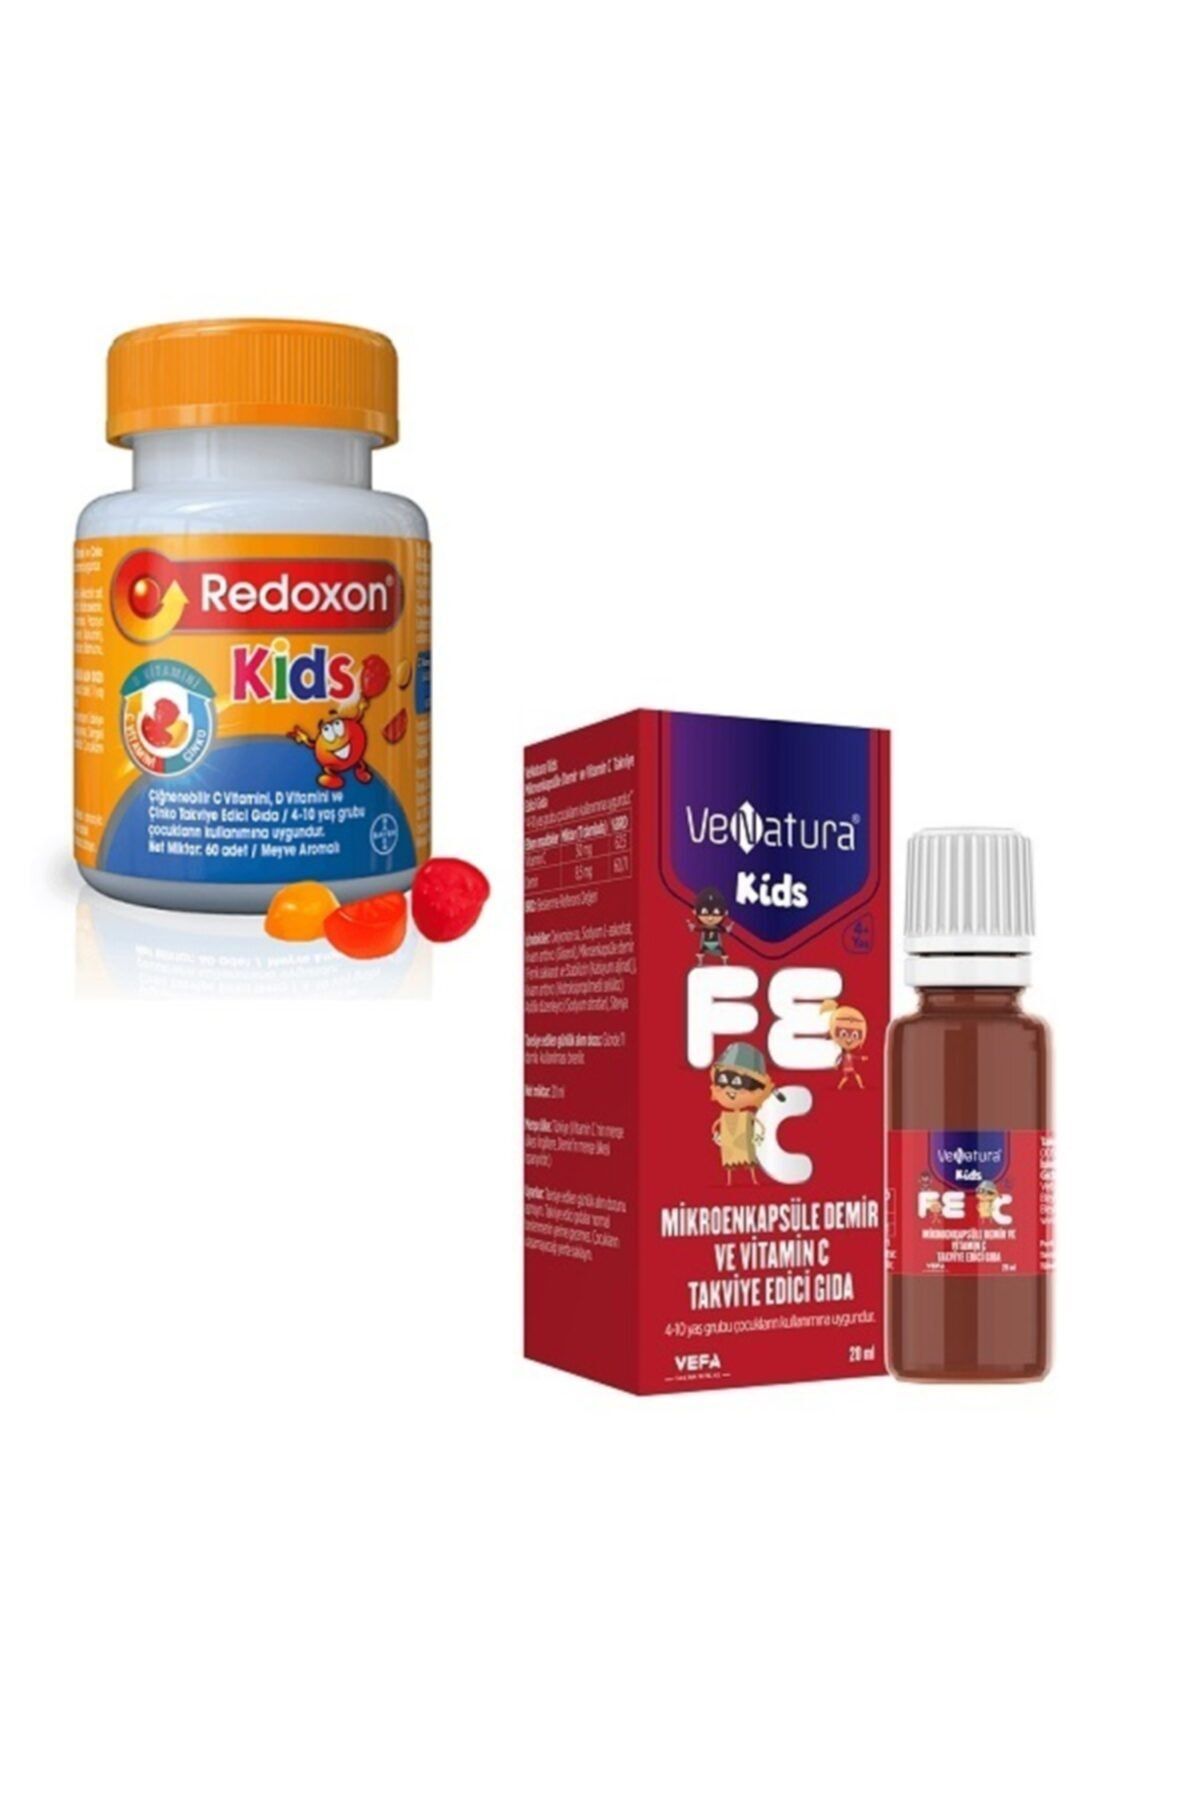 Redoxon ® Kids 60 Tablet (c, D, Çinko) + Çocuklara Vitamin C,demir 20 Ml